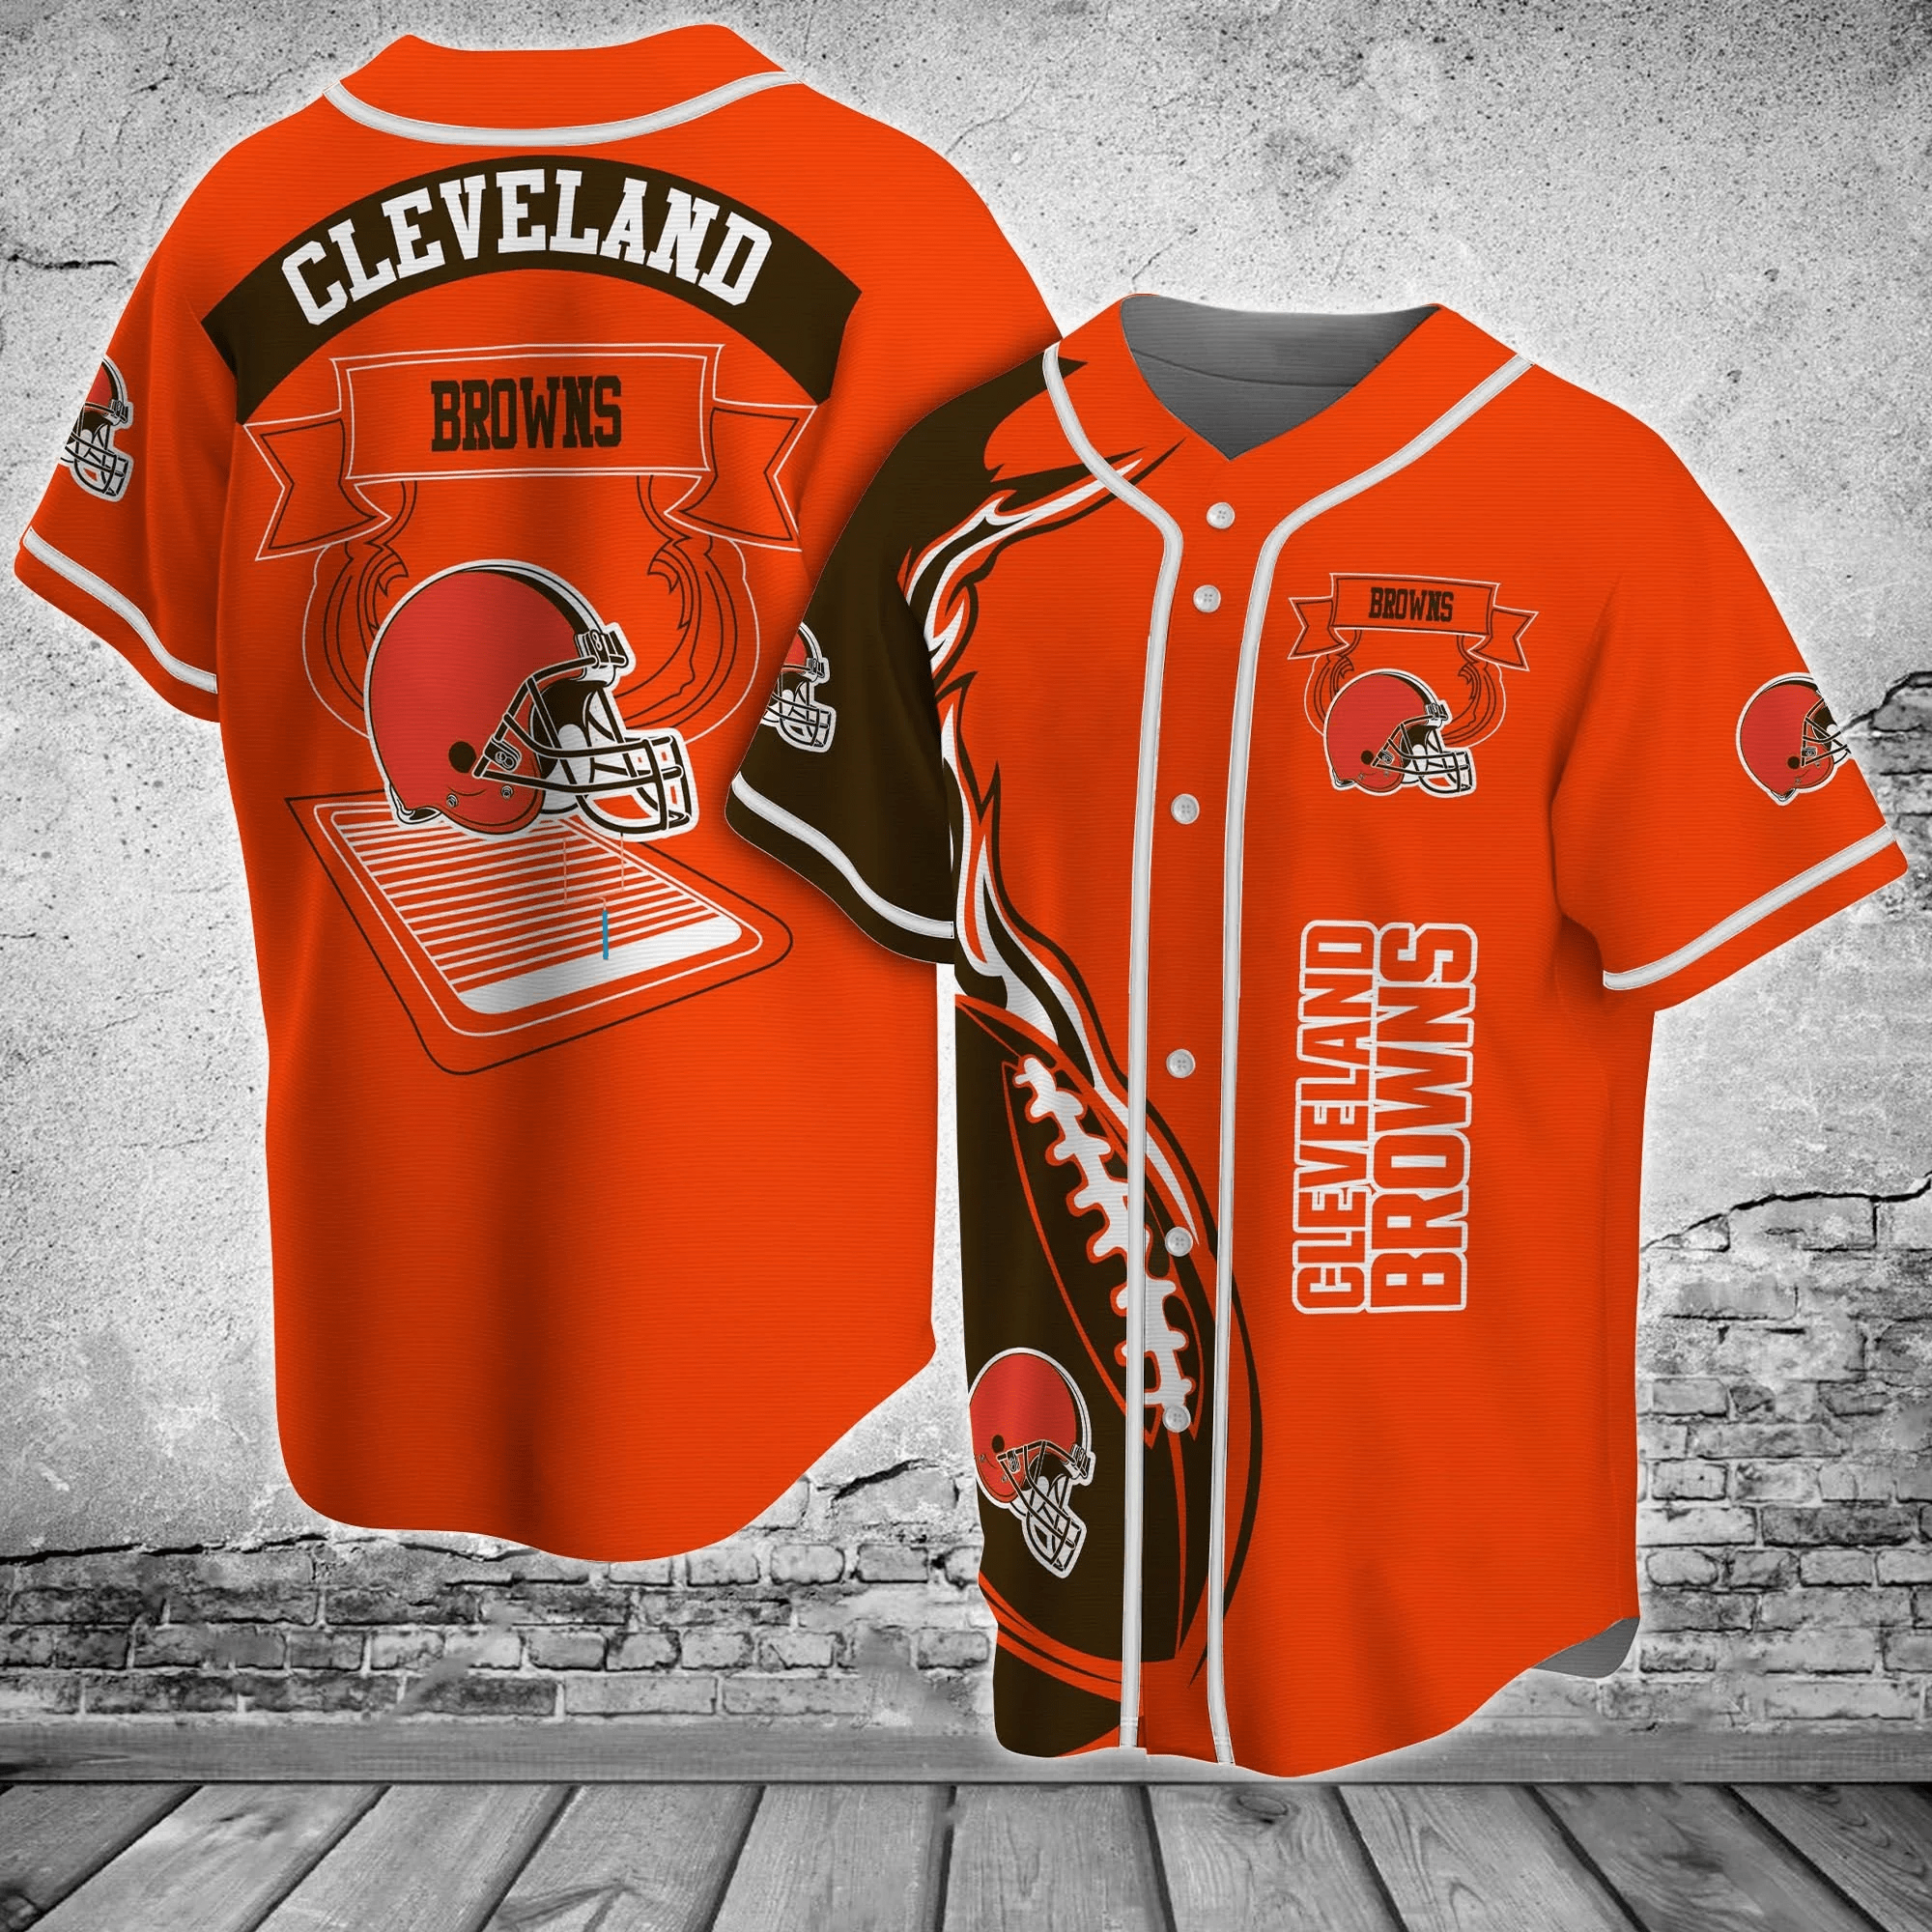 Cleveland Browns NFL Baseball Jersey Shirt